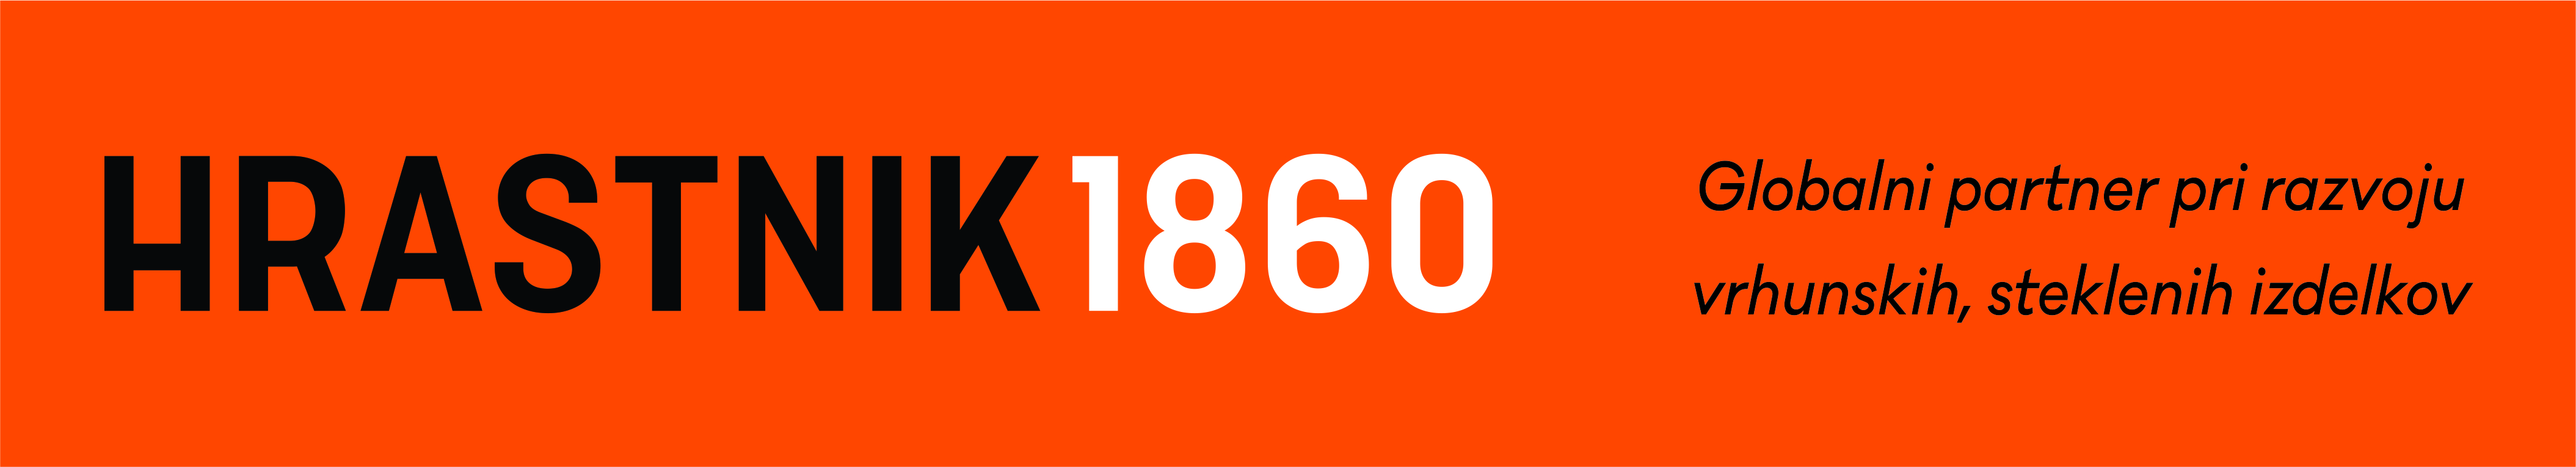 Logo bener hrastnik 1380x250